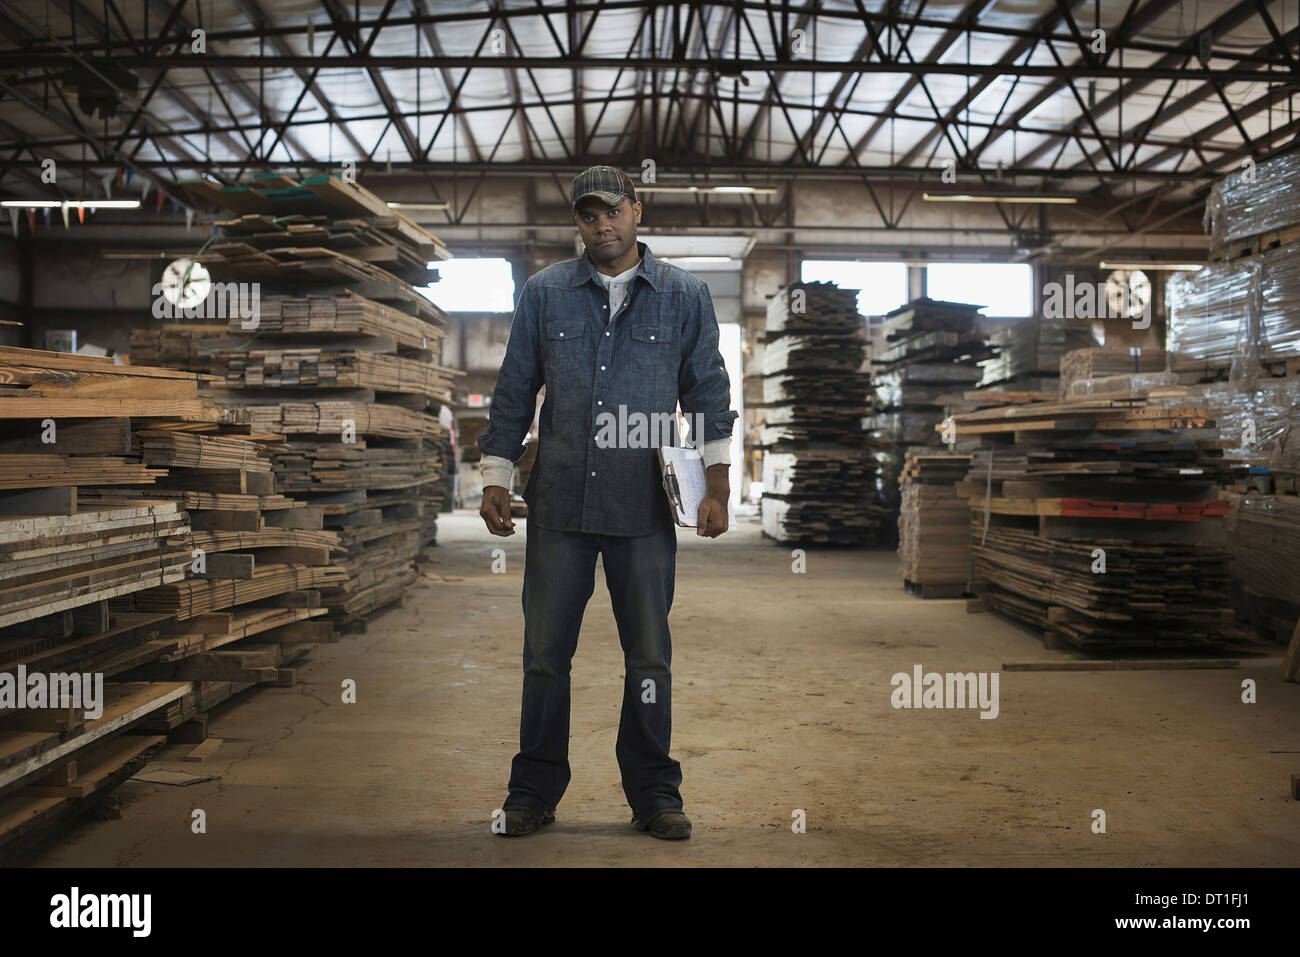 Ein Haufen von recycelten aufgearbeiteten Holzbohlen von Holz Reklamation in einem Holz Hof einen Mann im Werk Overall mit einem Klemmbrett Stockfoto